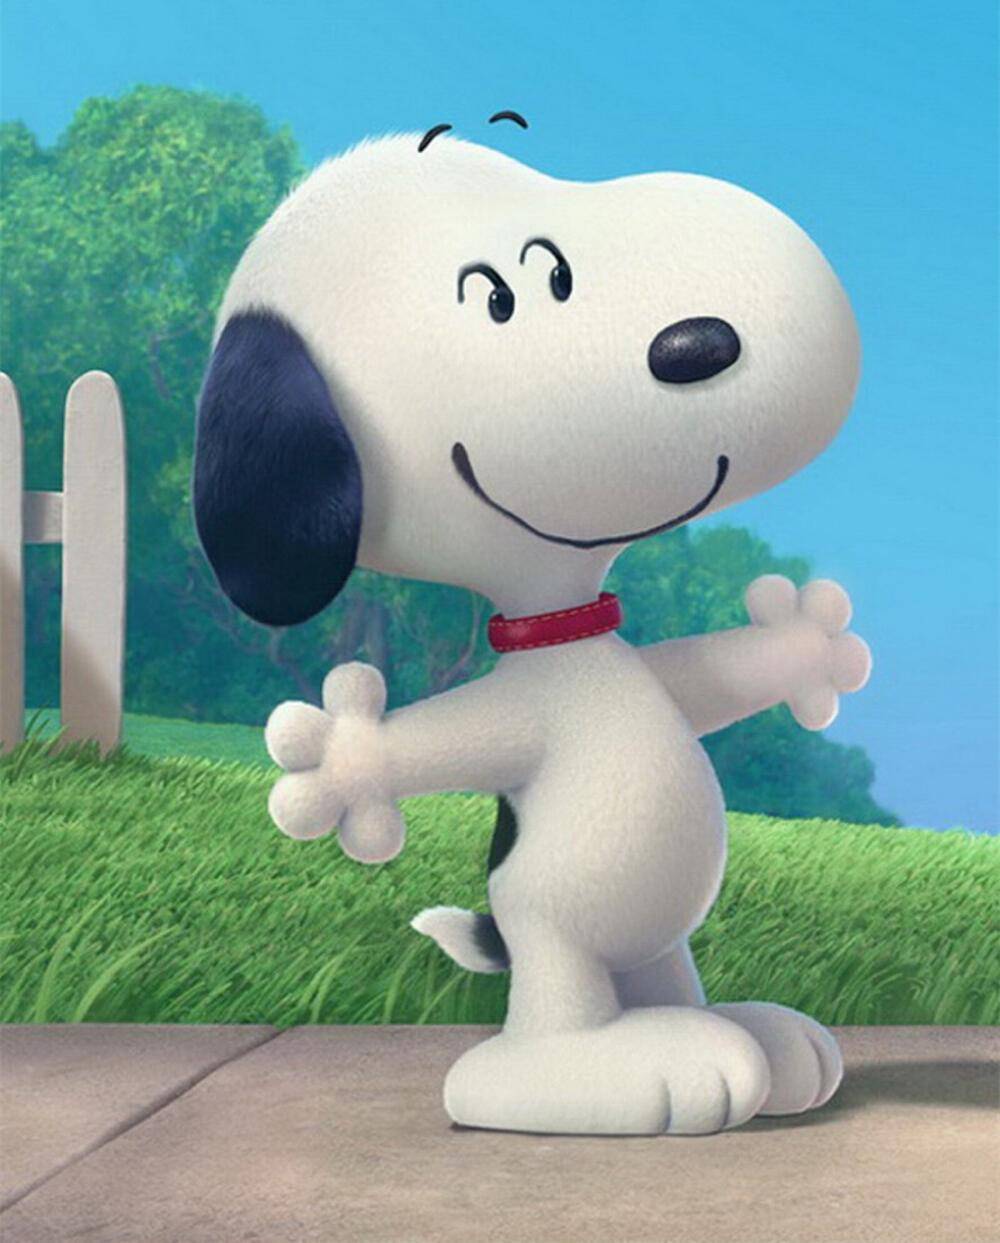 苹果照片漫画版:小狗因为酷似史努比而走红，被称为真狗版史努比，疯狂吸粉